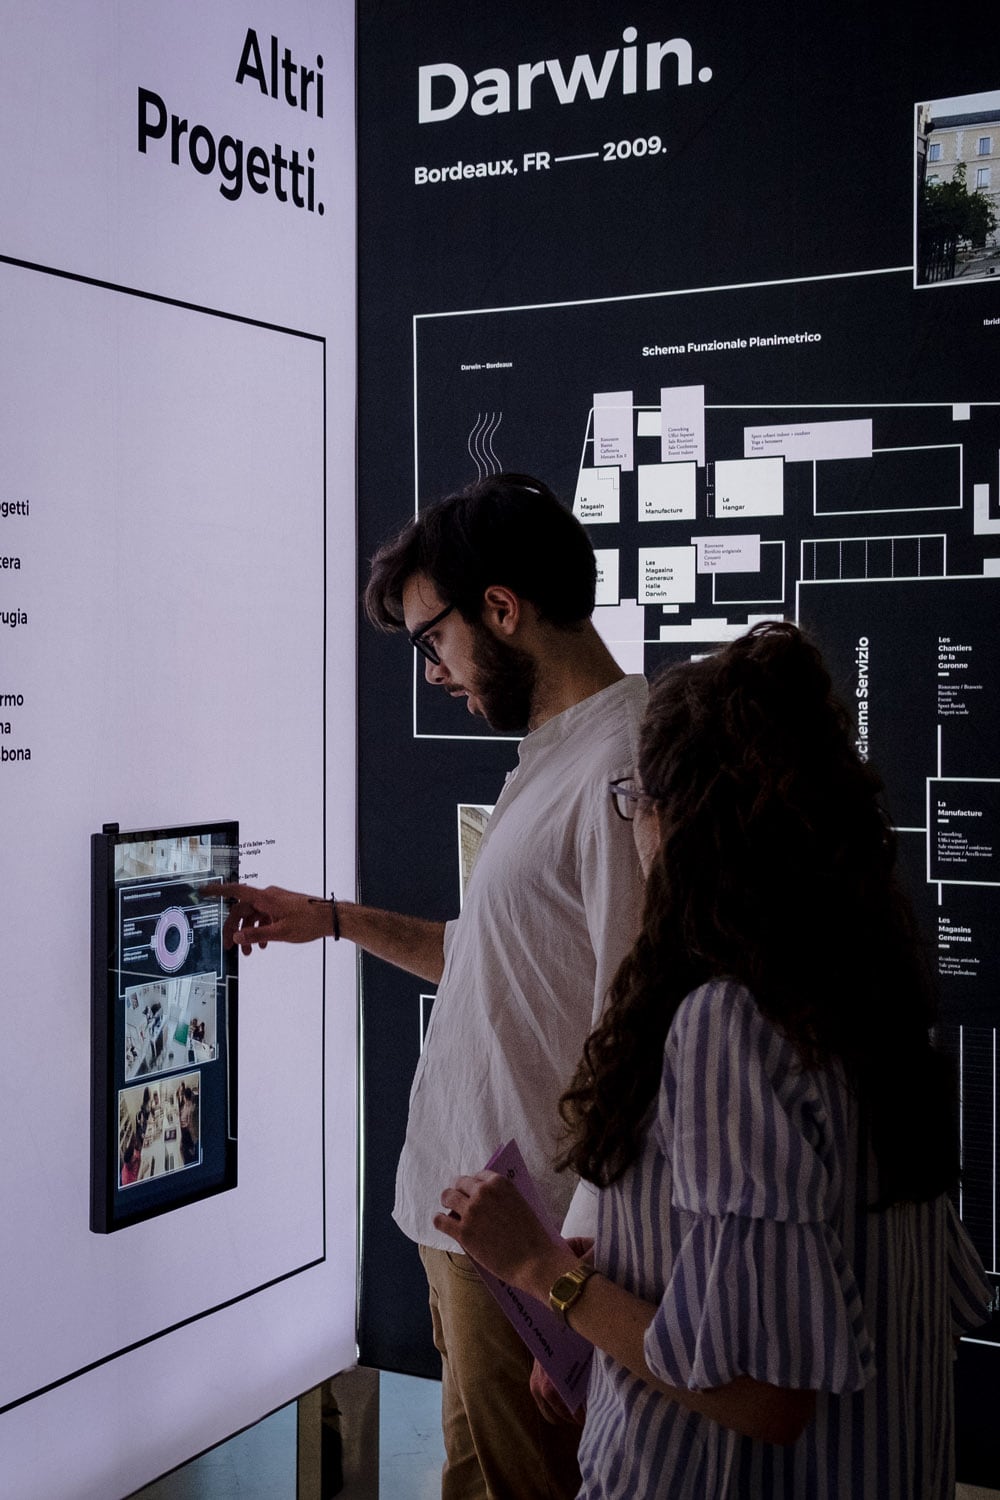 ragazzi che interagiscono con uno schermo touch all'installazione nub:New Urban Body, progetto ett alla triennale di milano